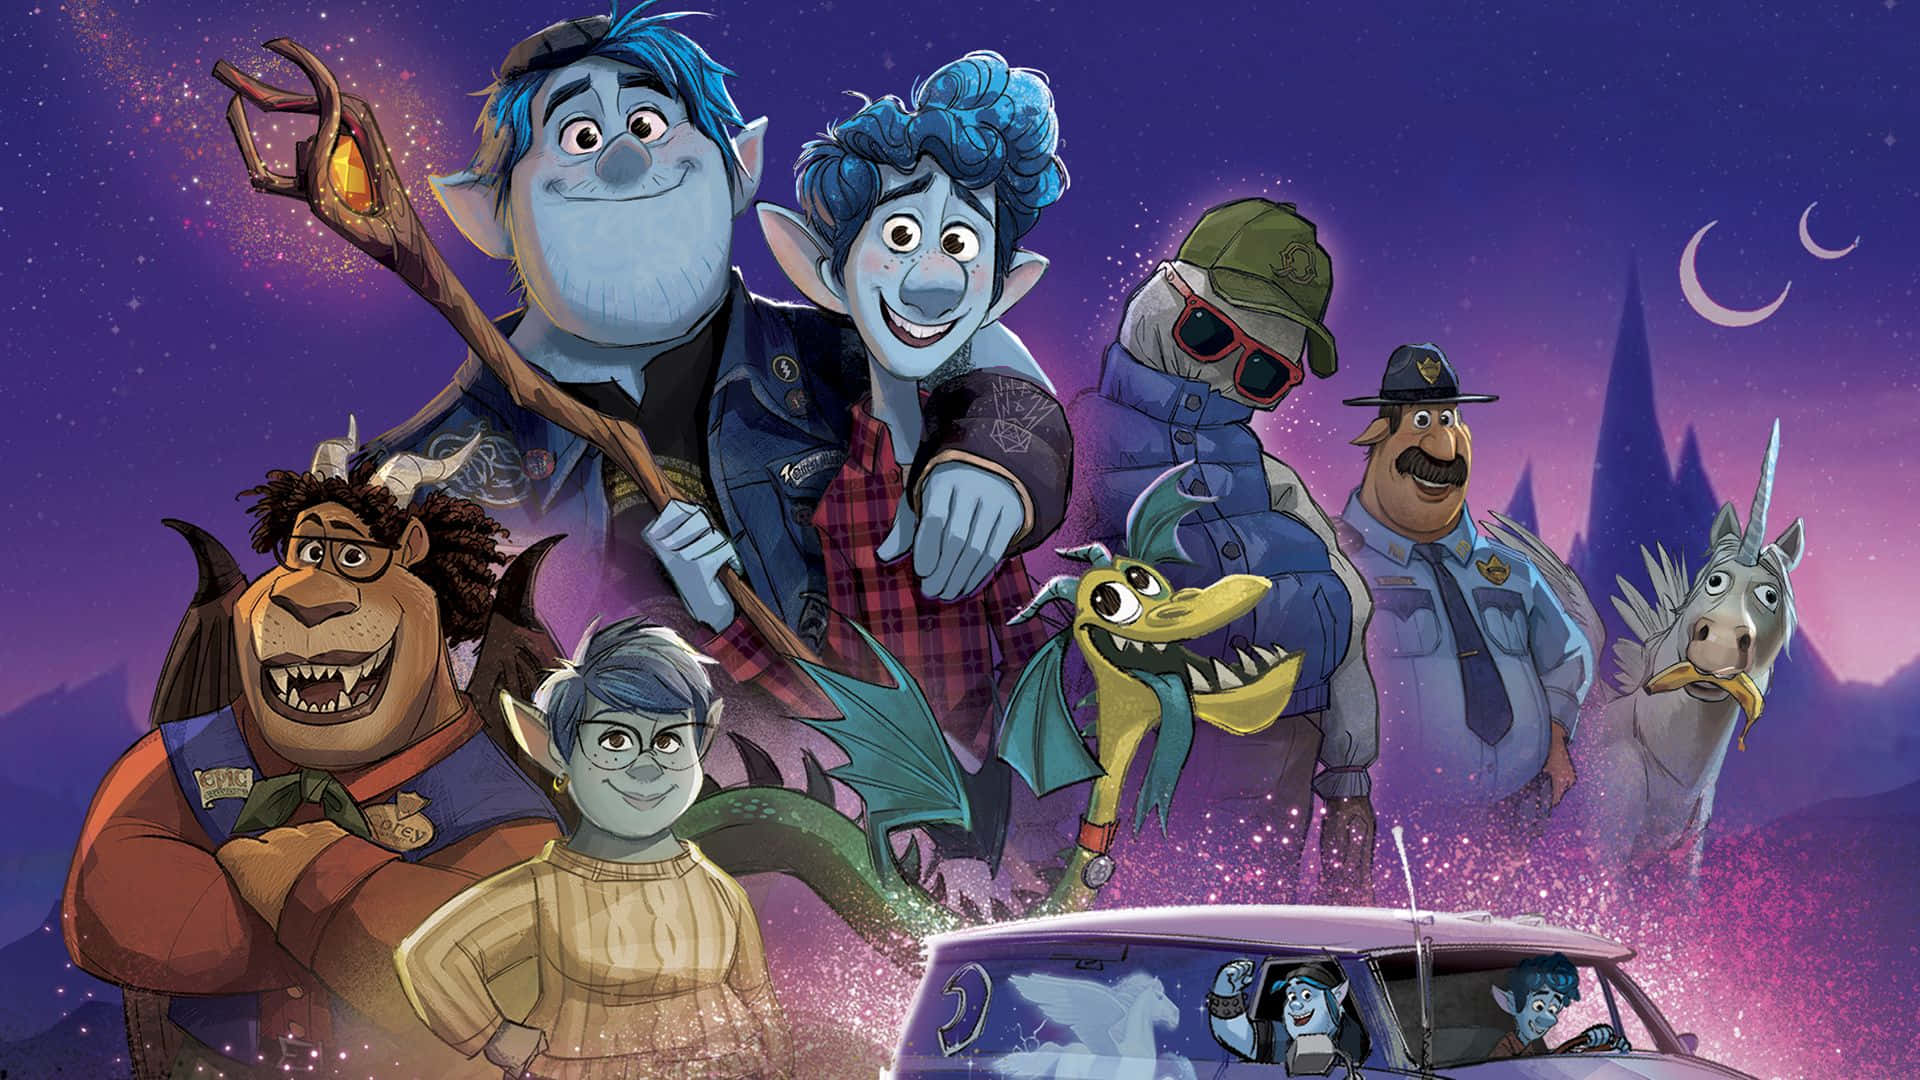 Pixar celebrates the magic of storytelling